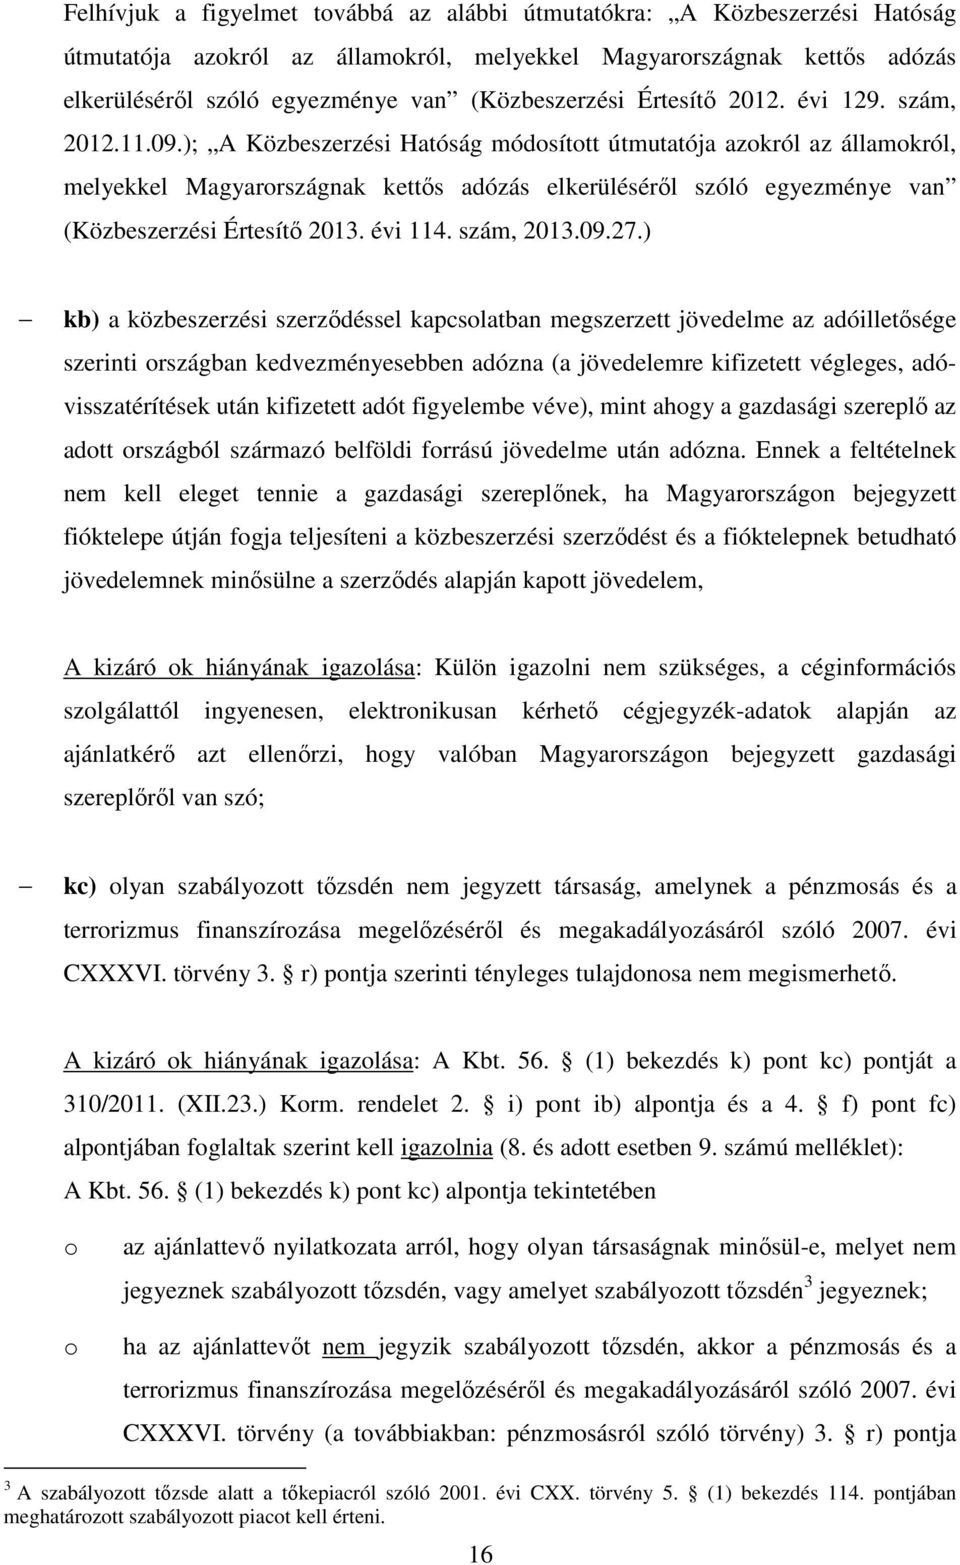 ); A Közbeszerzési Hatóság módosított útmutatója azokról az államokról, melyekkel Magyarországnak kettős adózás elkerüléséről szóló egyezménye van (Közbeszerzési Értesítő 2013. évi 114. szám, 2013.09.